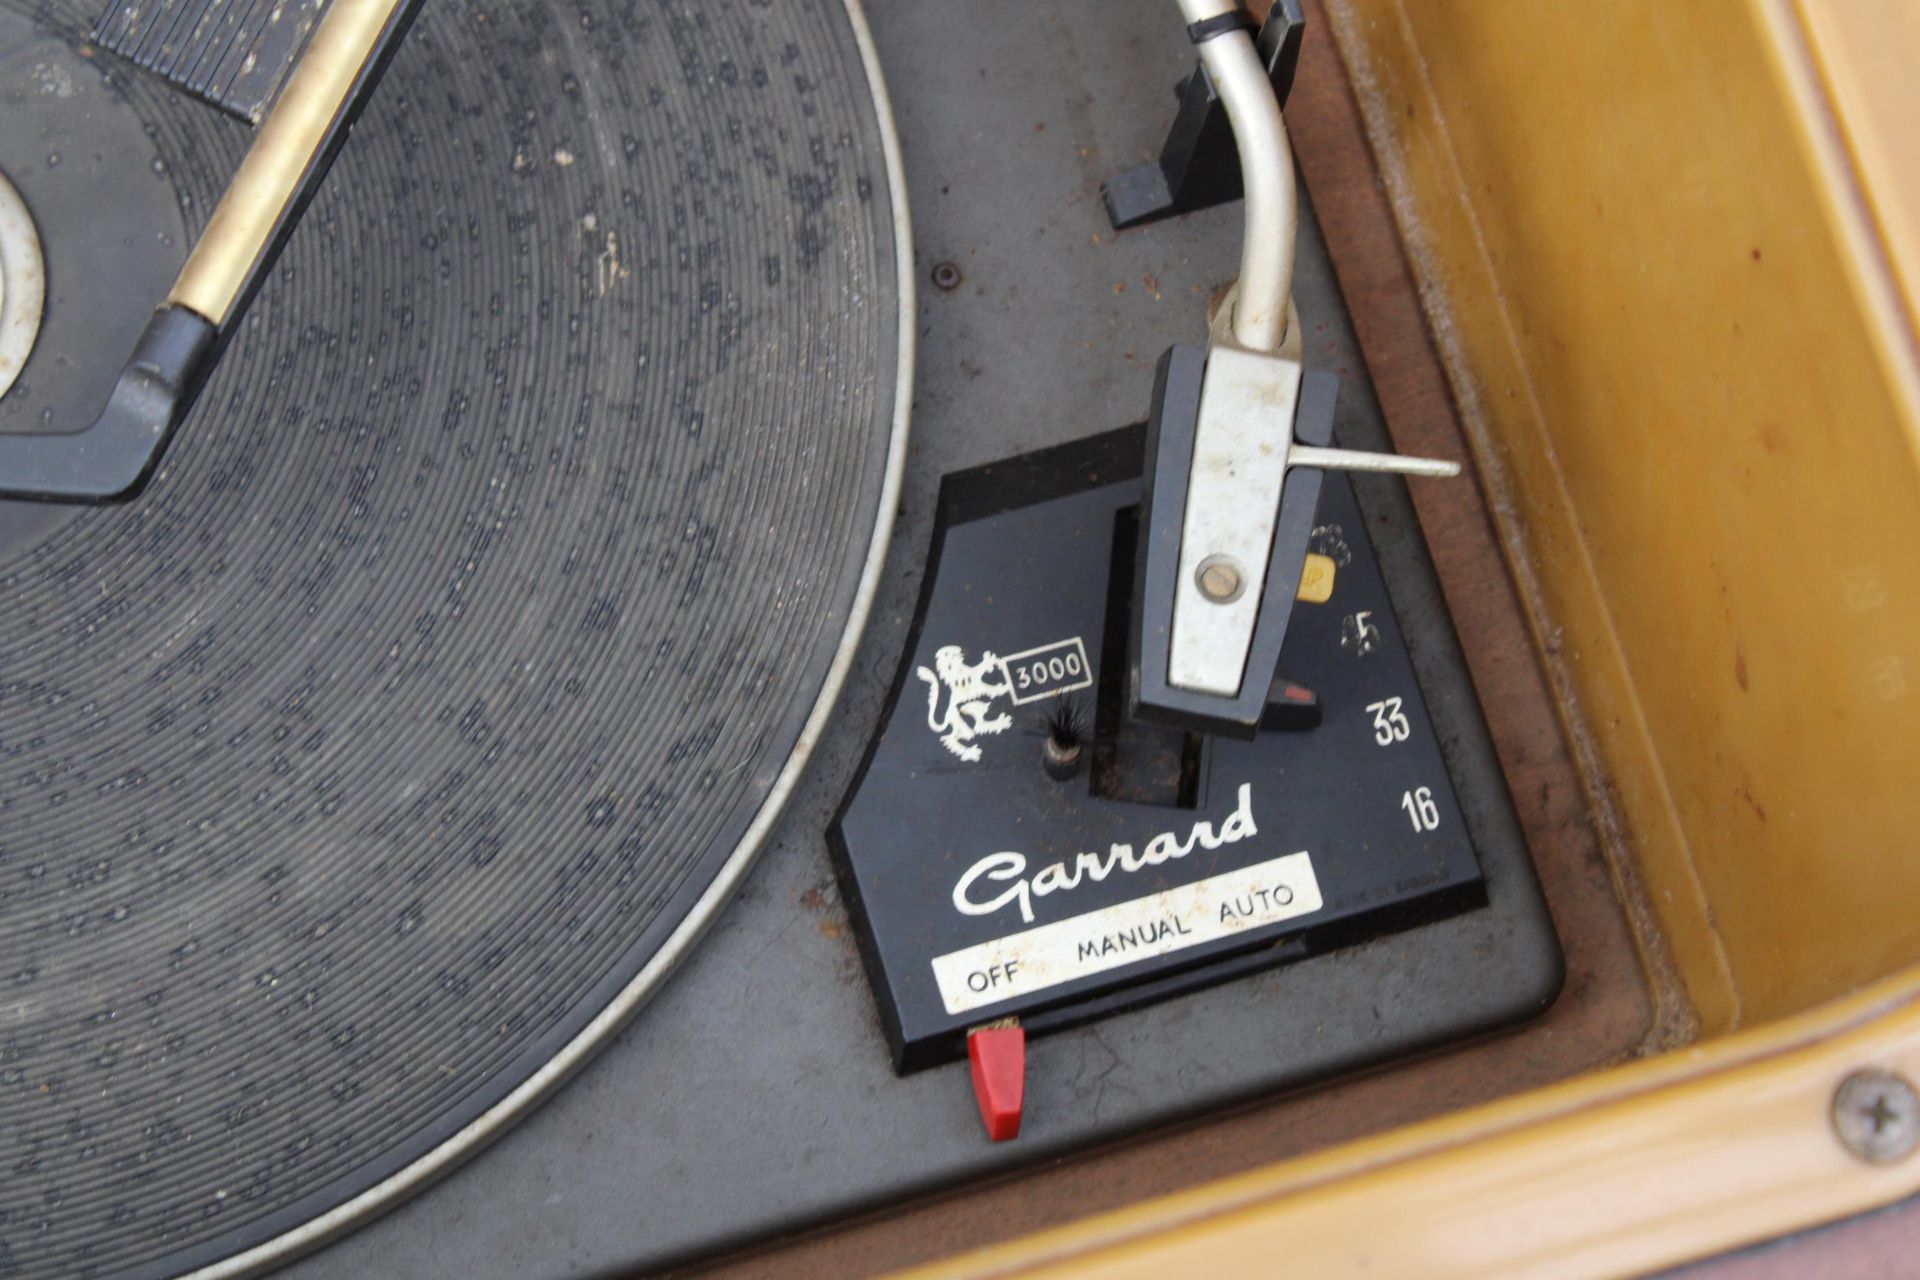 A VINTAGE MID CENTURY REGENTONE RADIOGRAM WITH A GARRARD DECK - Bild 3 aus 6